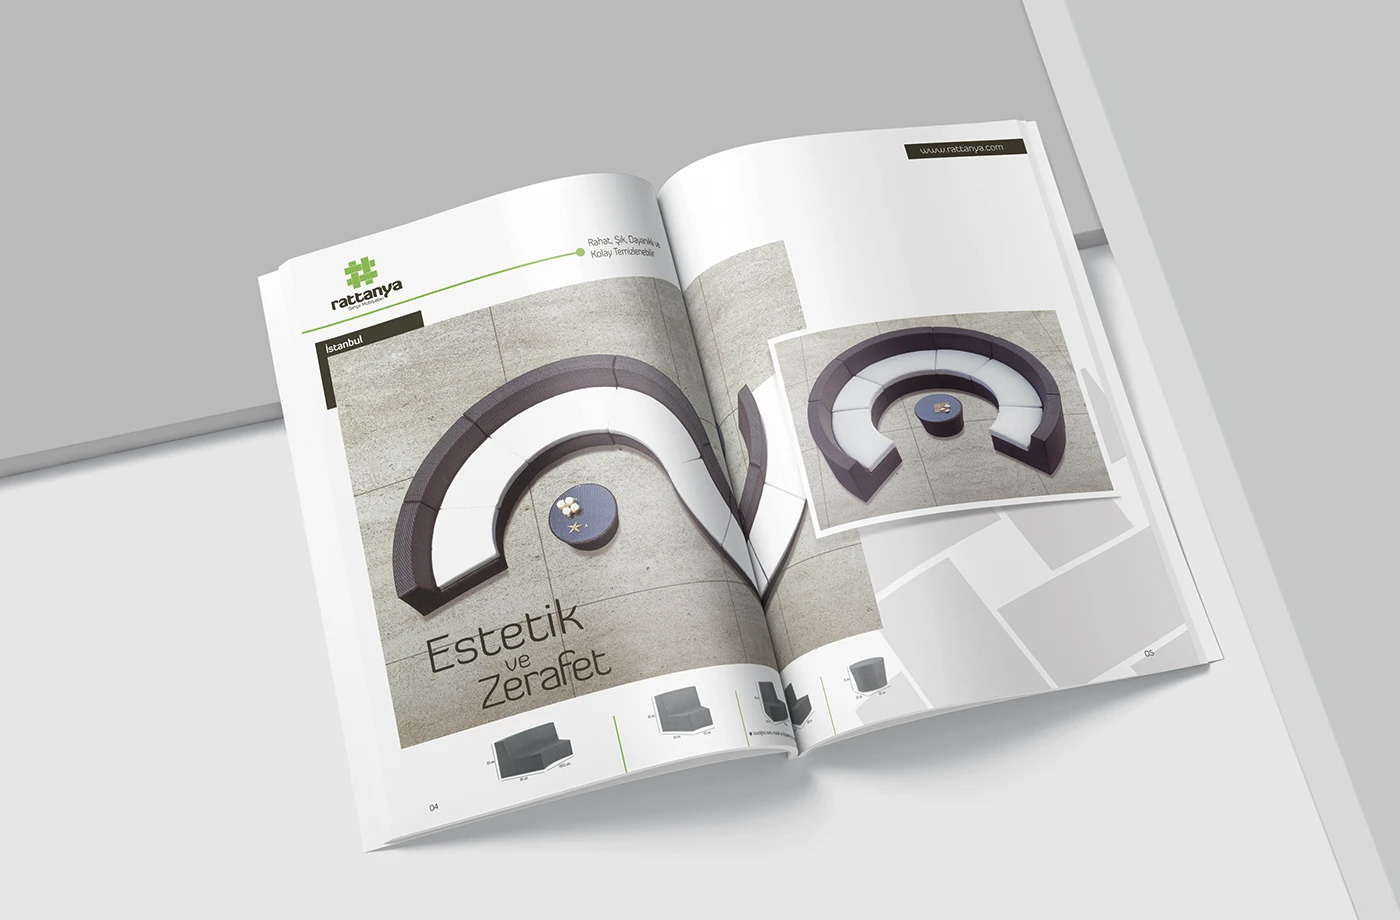 Mobilya Katalog Tasarım / Ürün Gösterim Sayfası